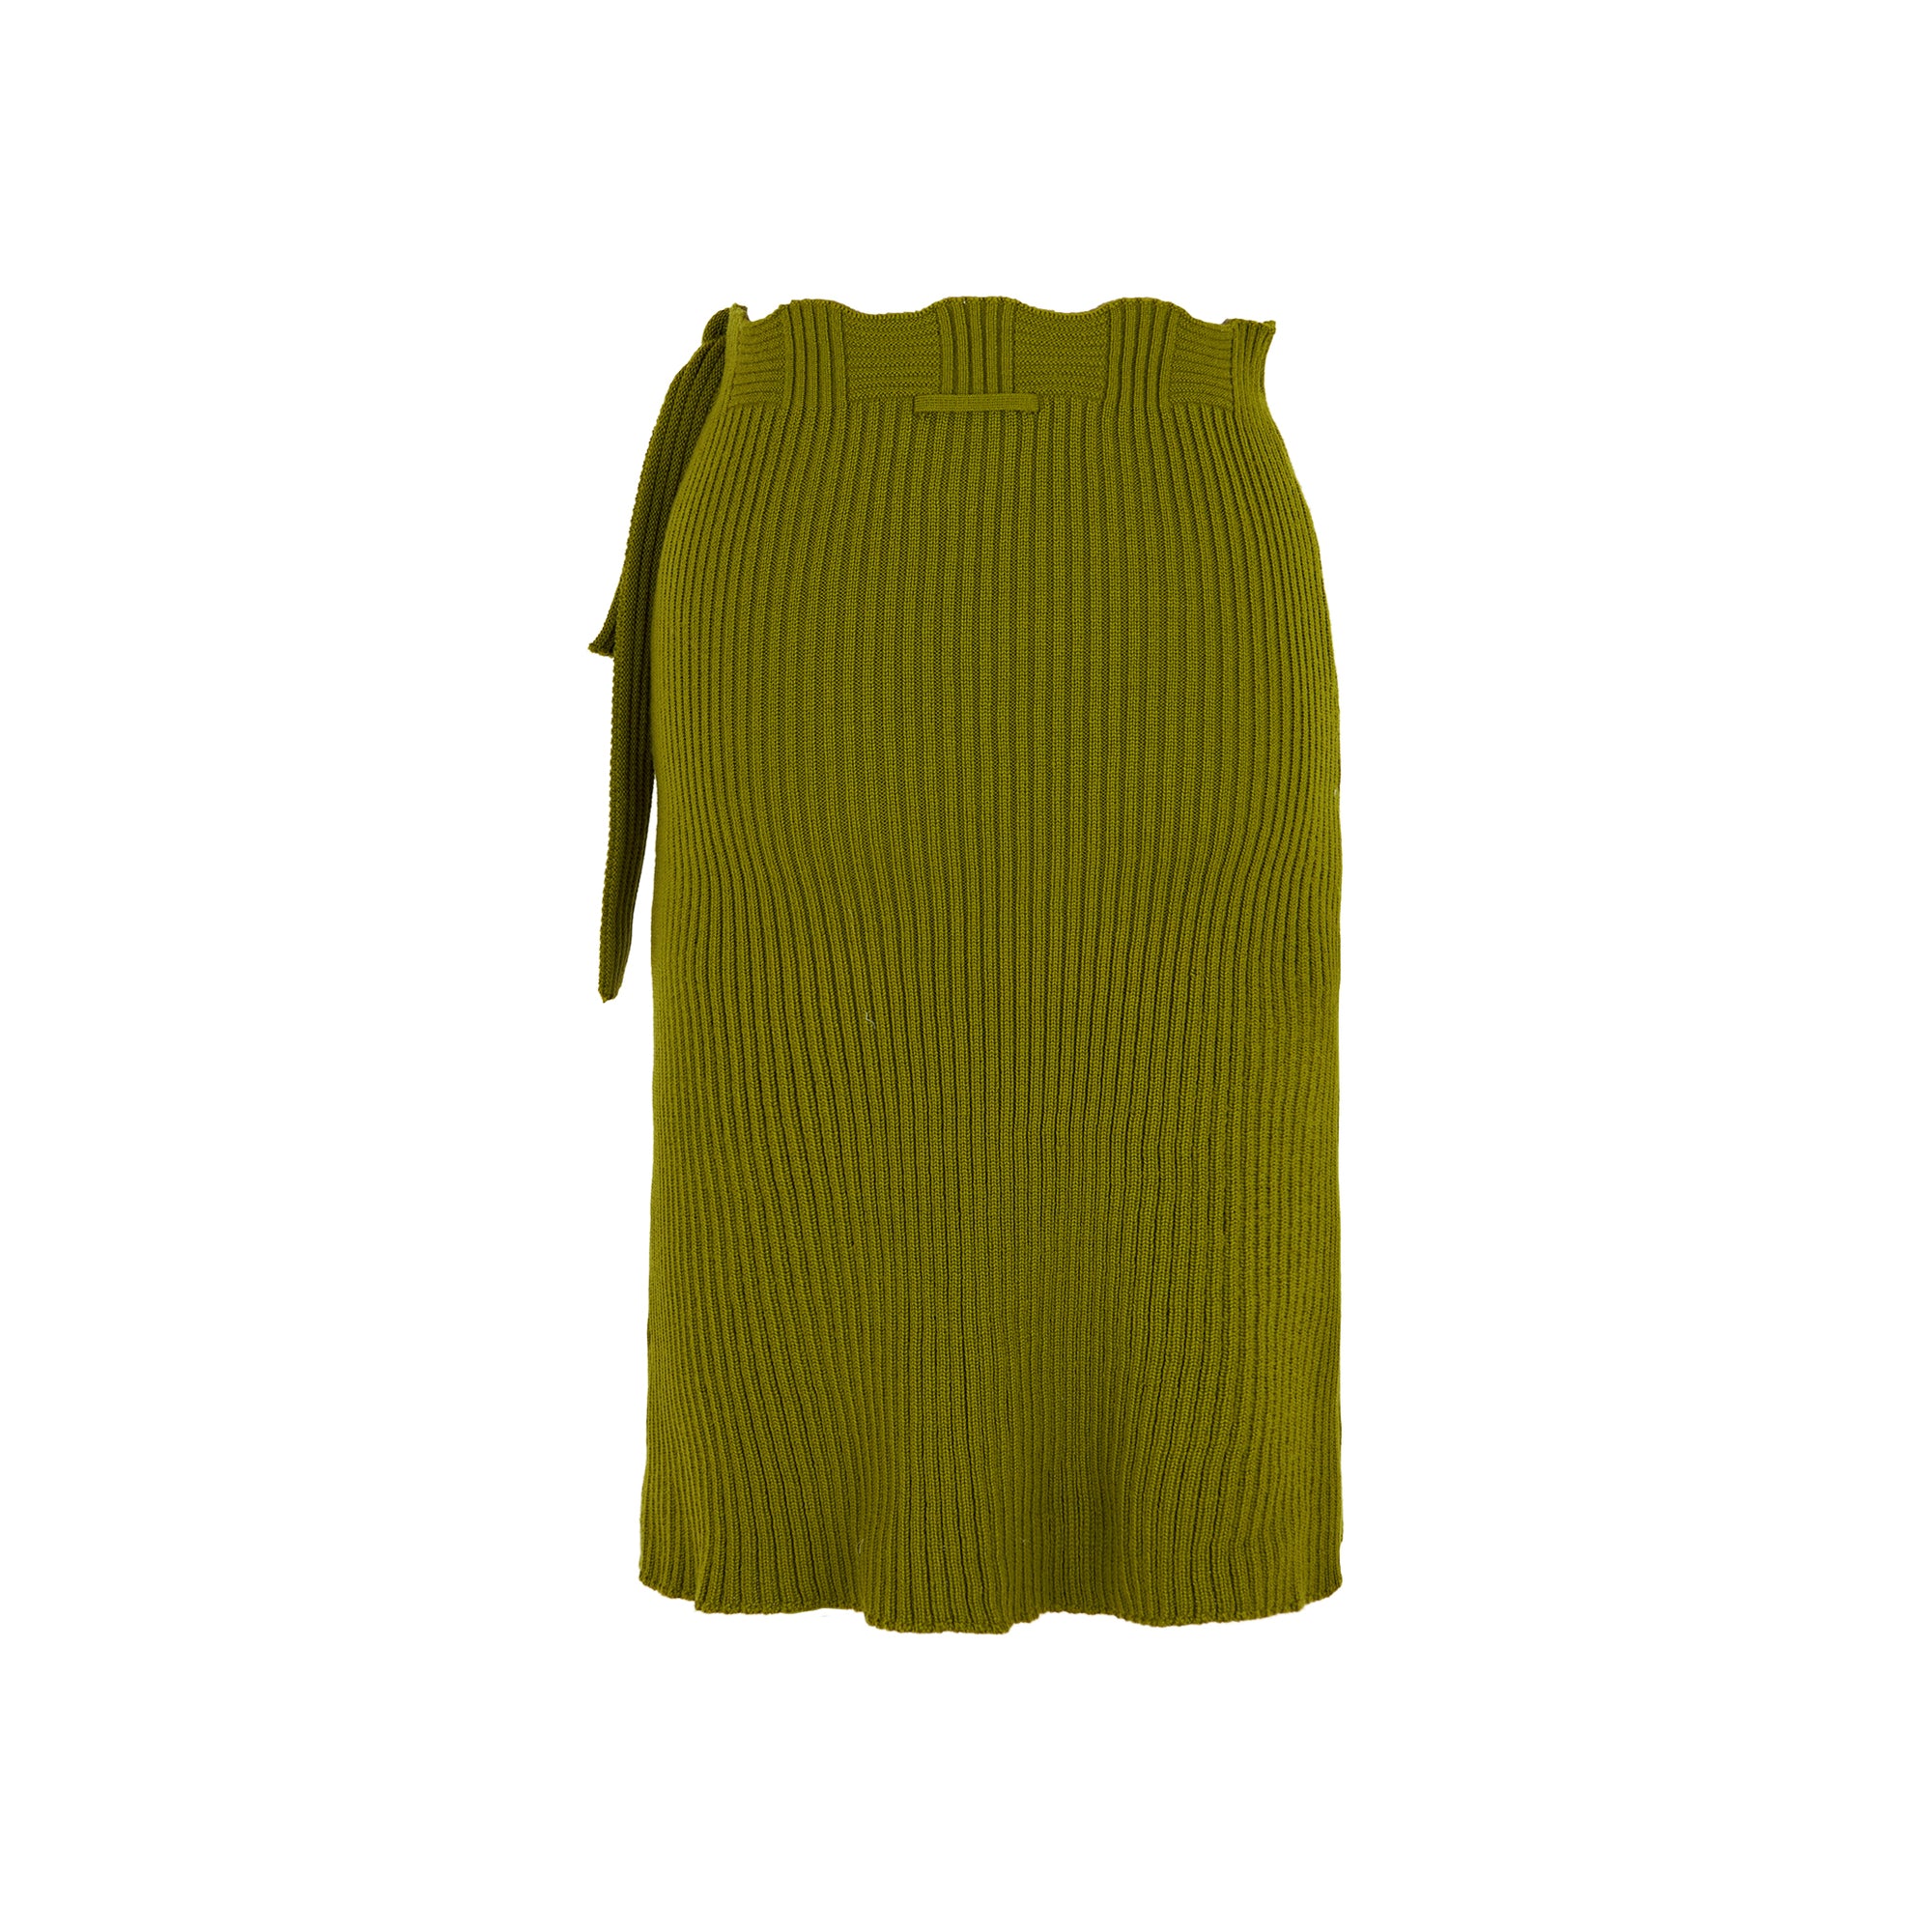 Jean Paul Gaultier Long woven green skirt